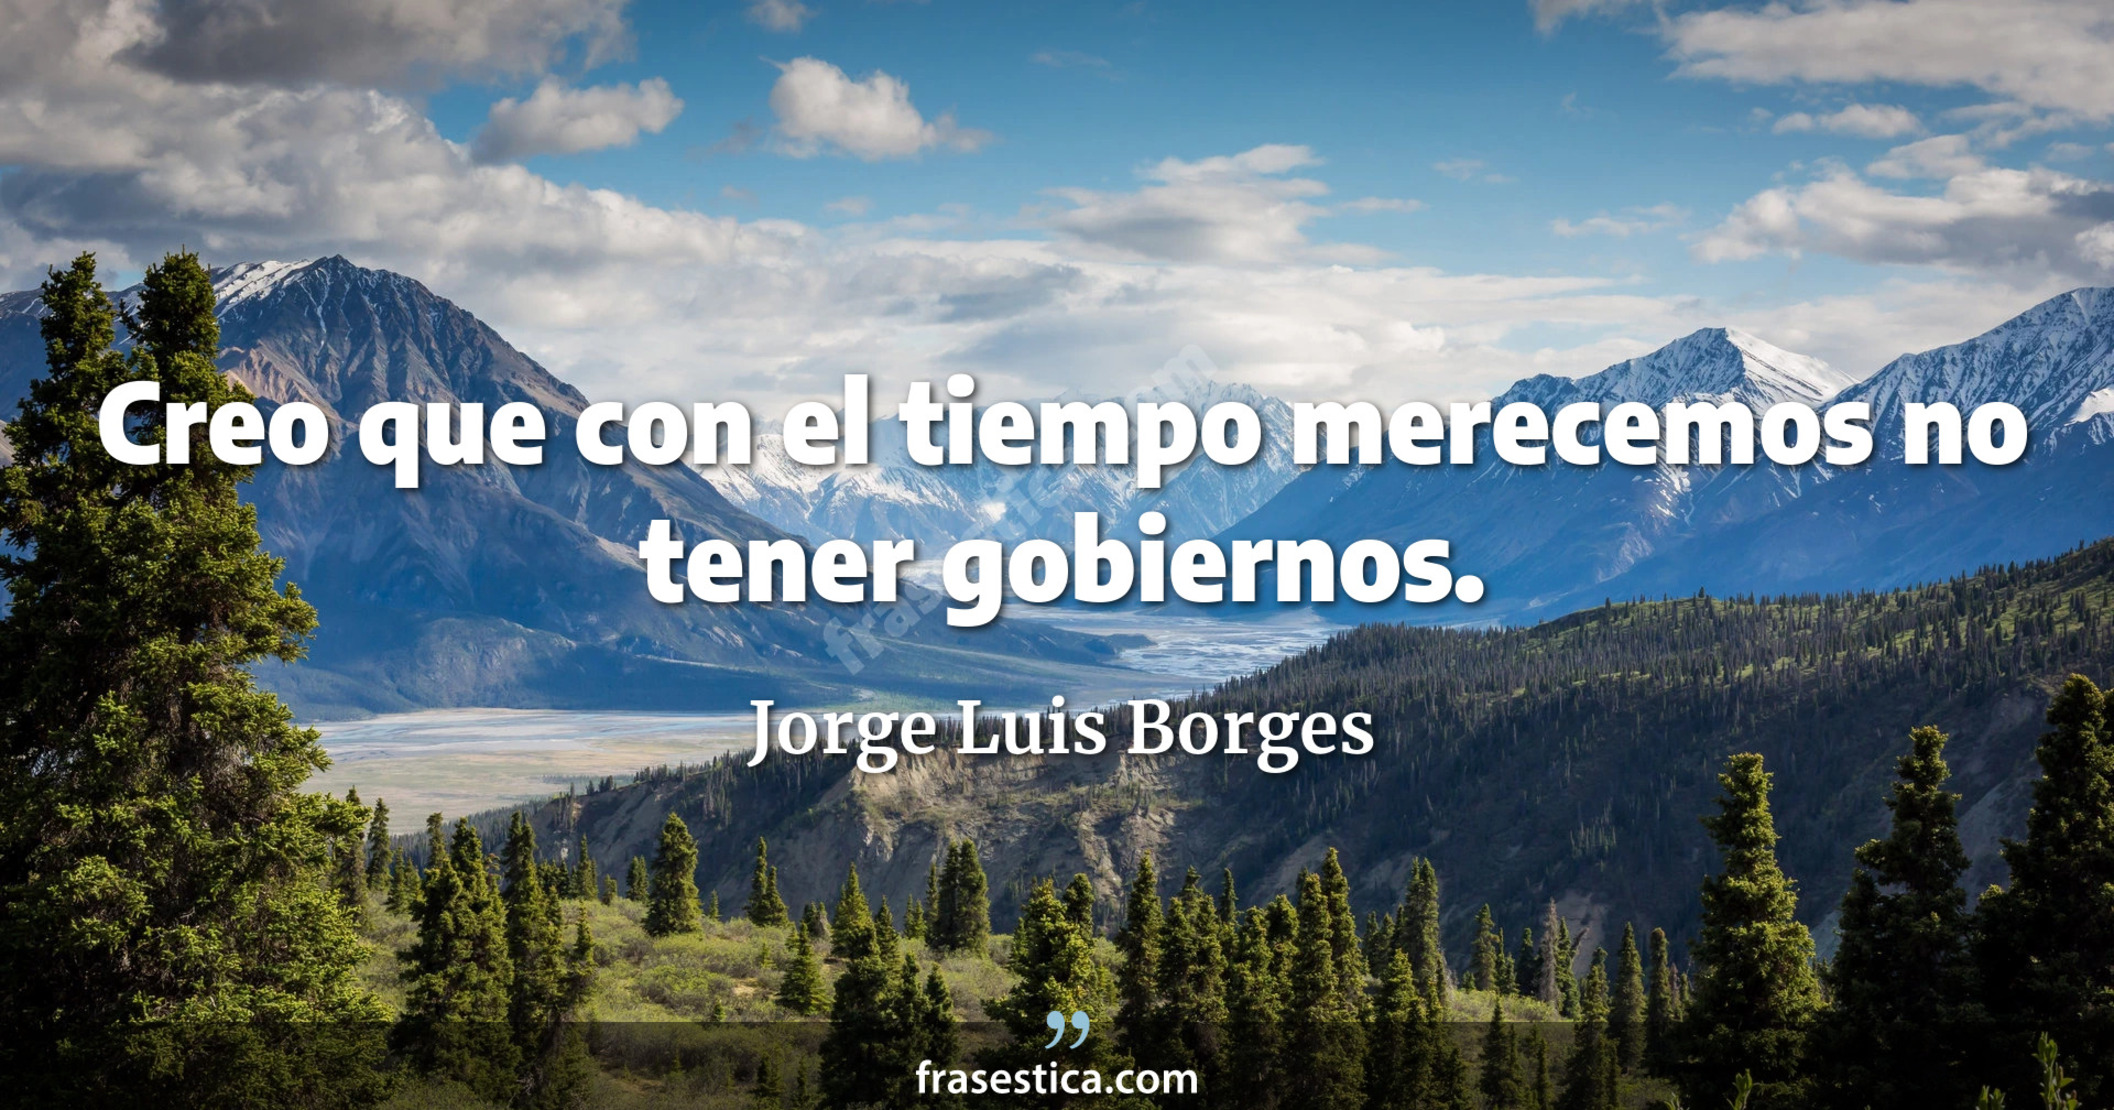 Creo que con el tiempo merecemos no tener gobiernos. - Jorge Luis Borges